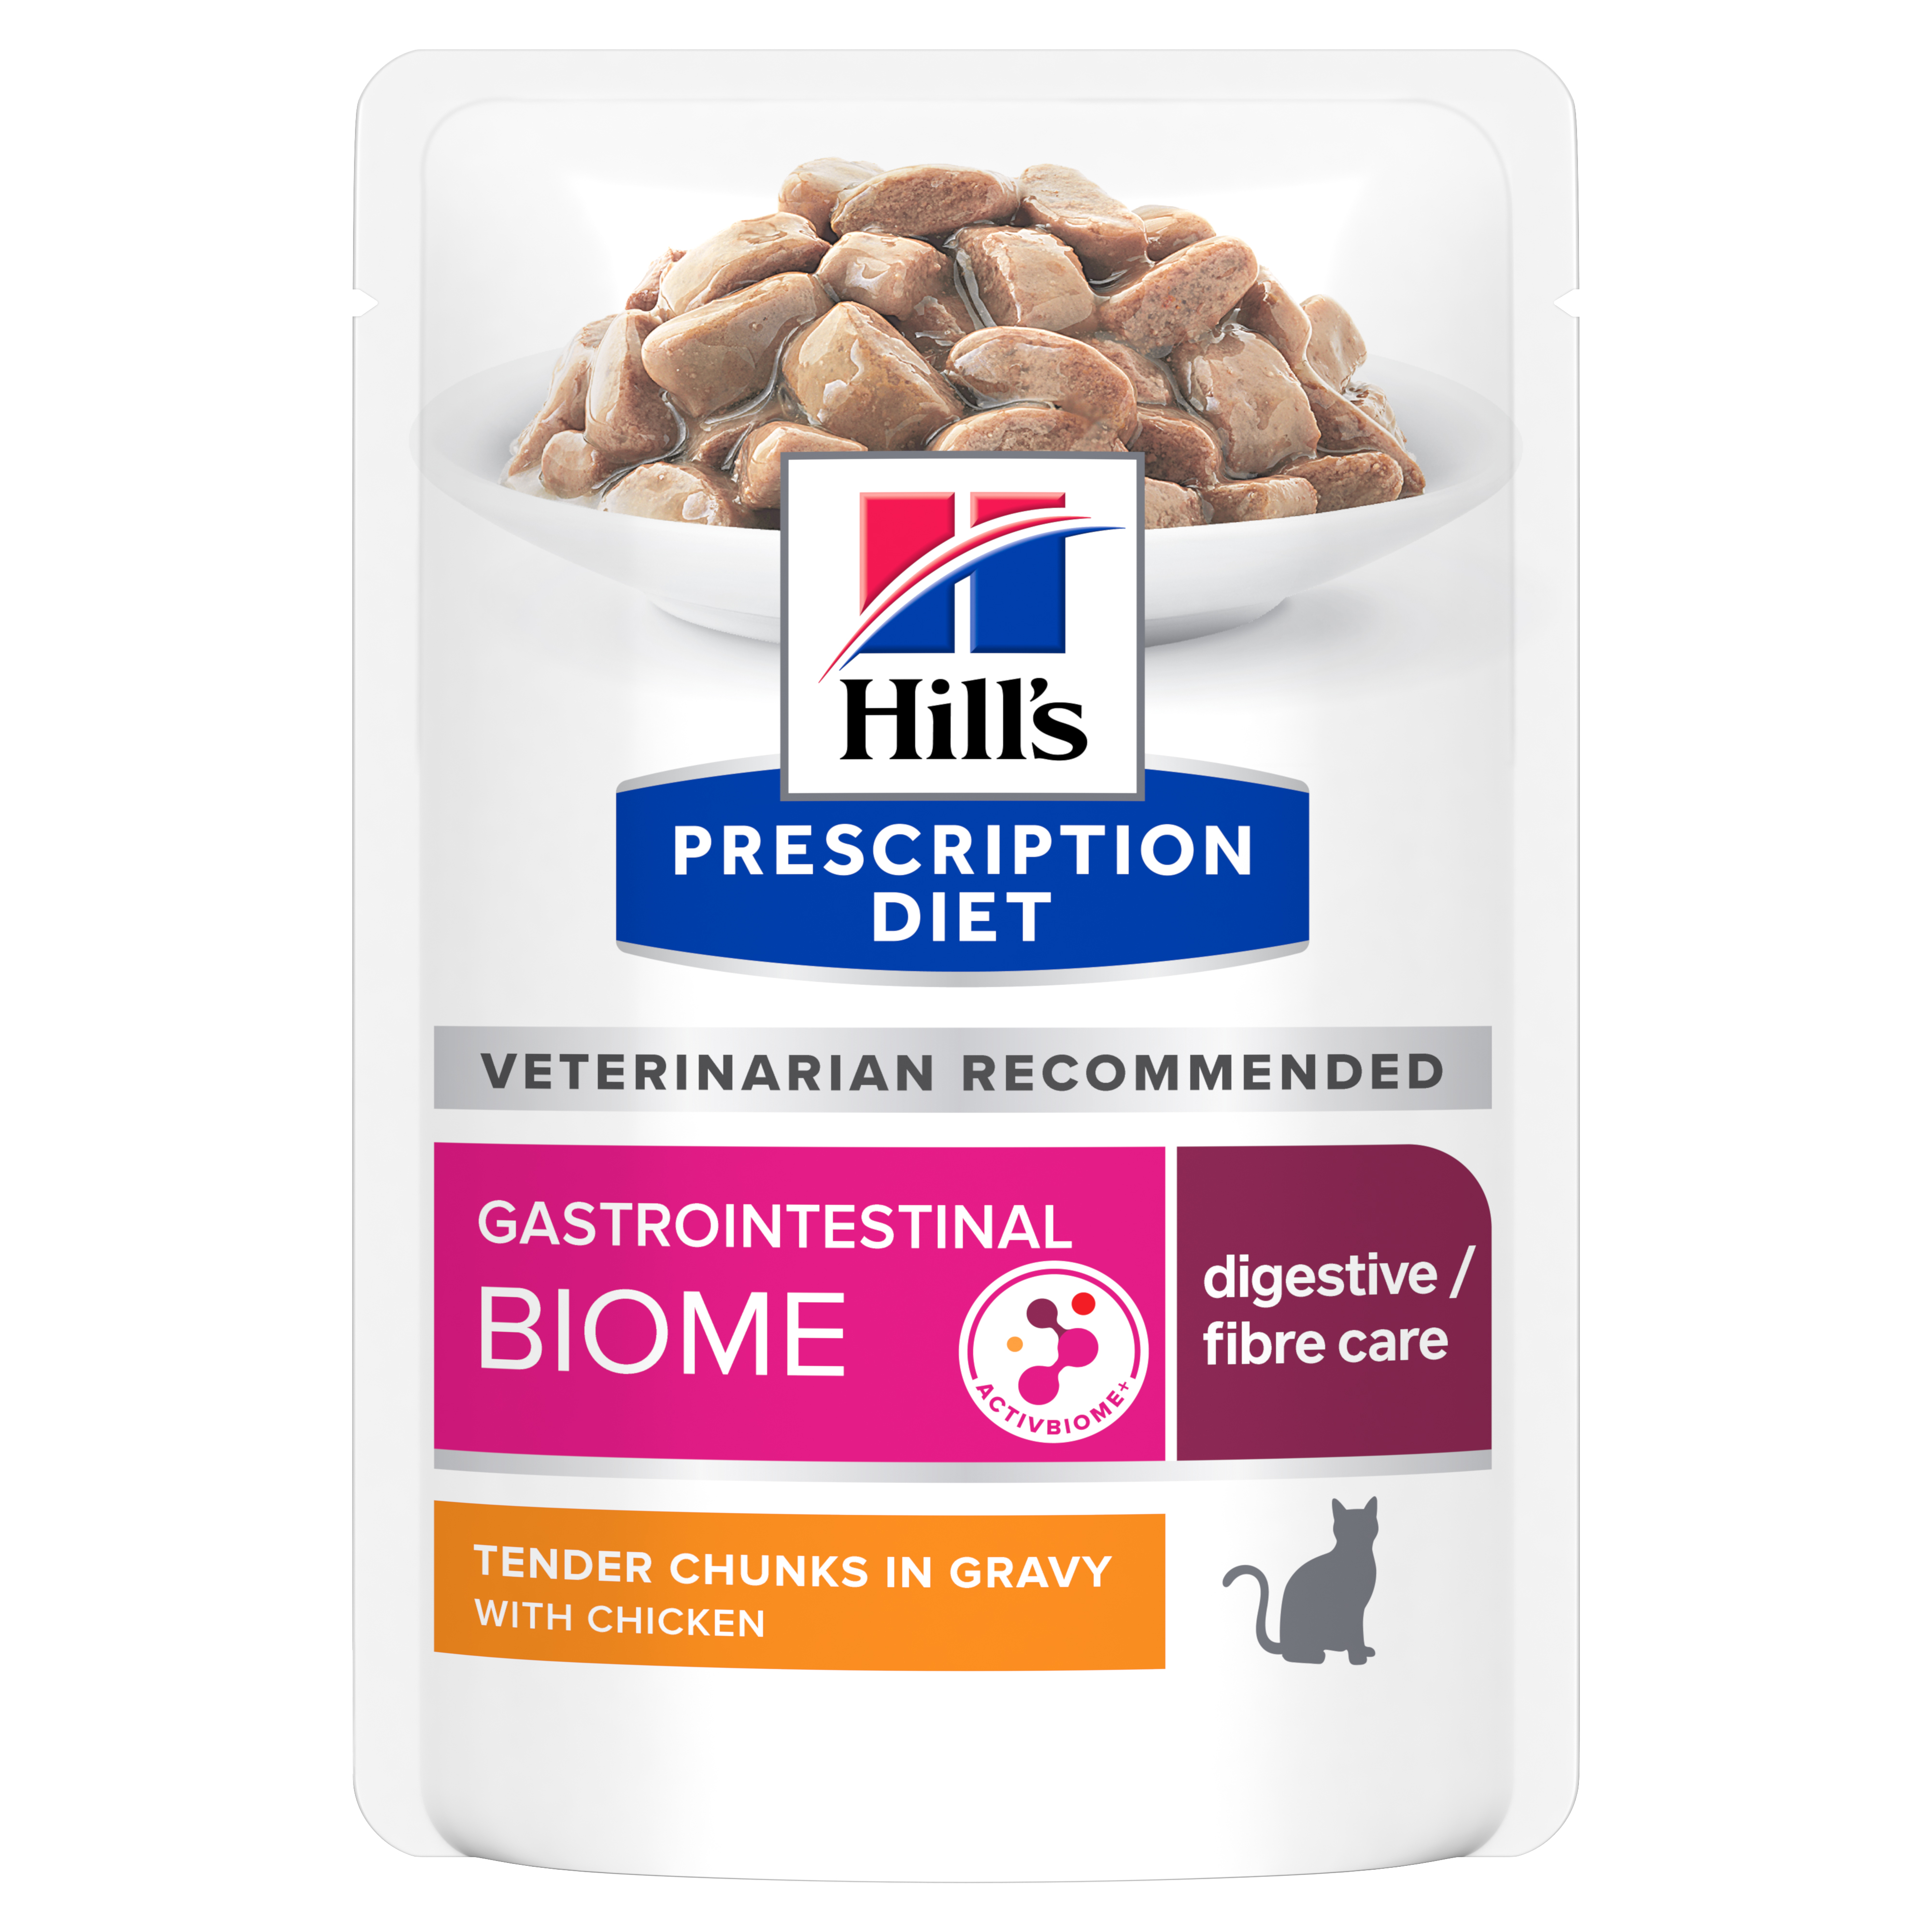 פאוצ' מזון GI BIOME | Hill's Prescription Diet לחתול בוגר, 85 גר' (12 יח')